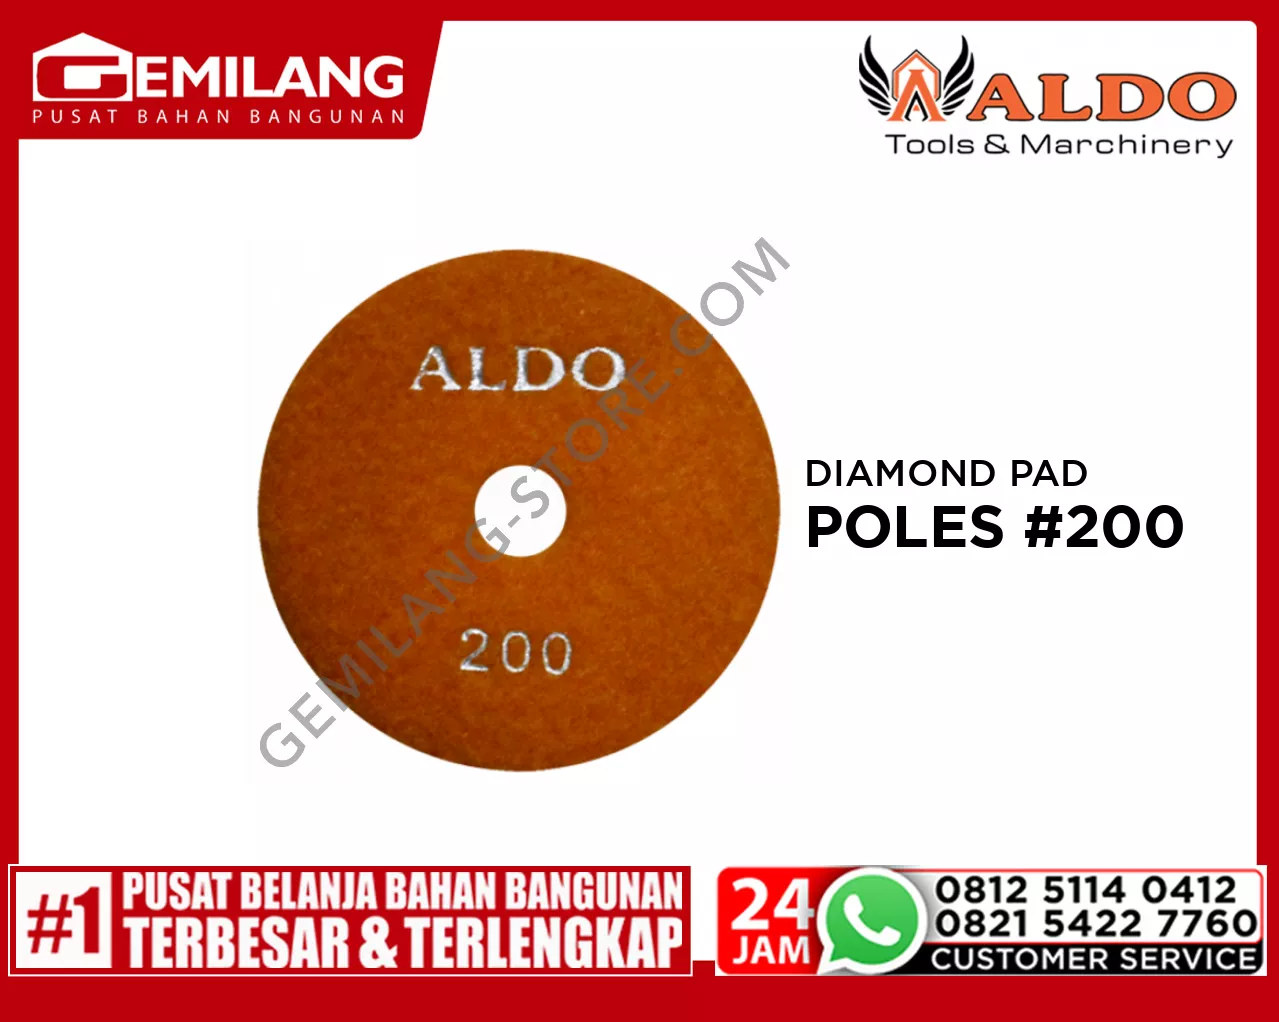 ALDO DIAMOND PAD POLES #200